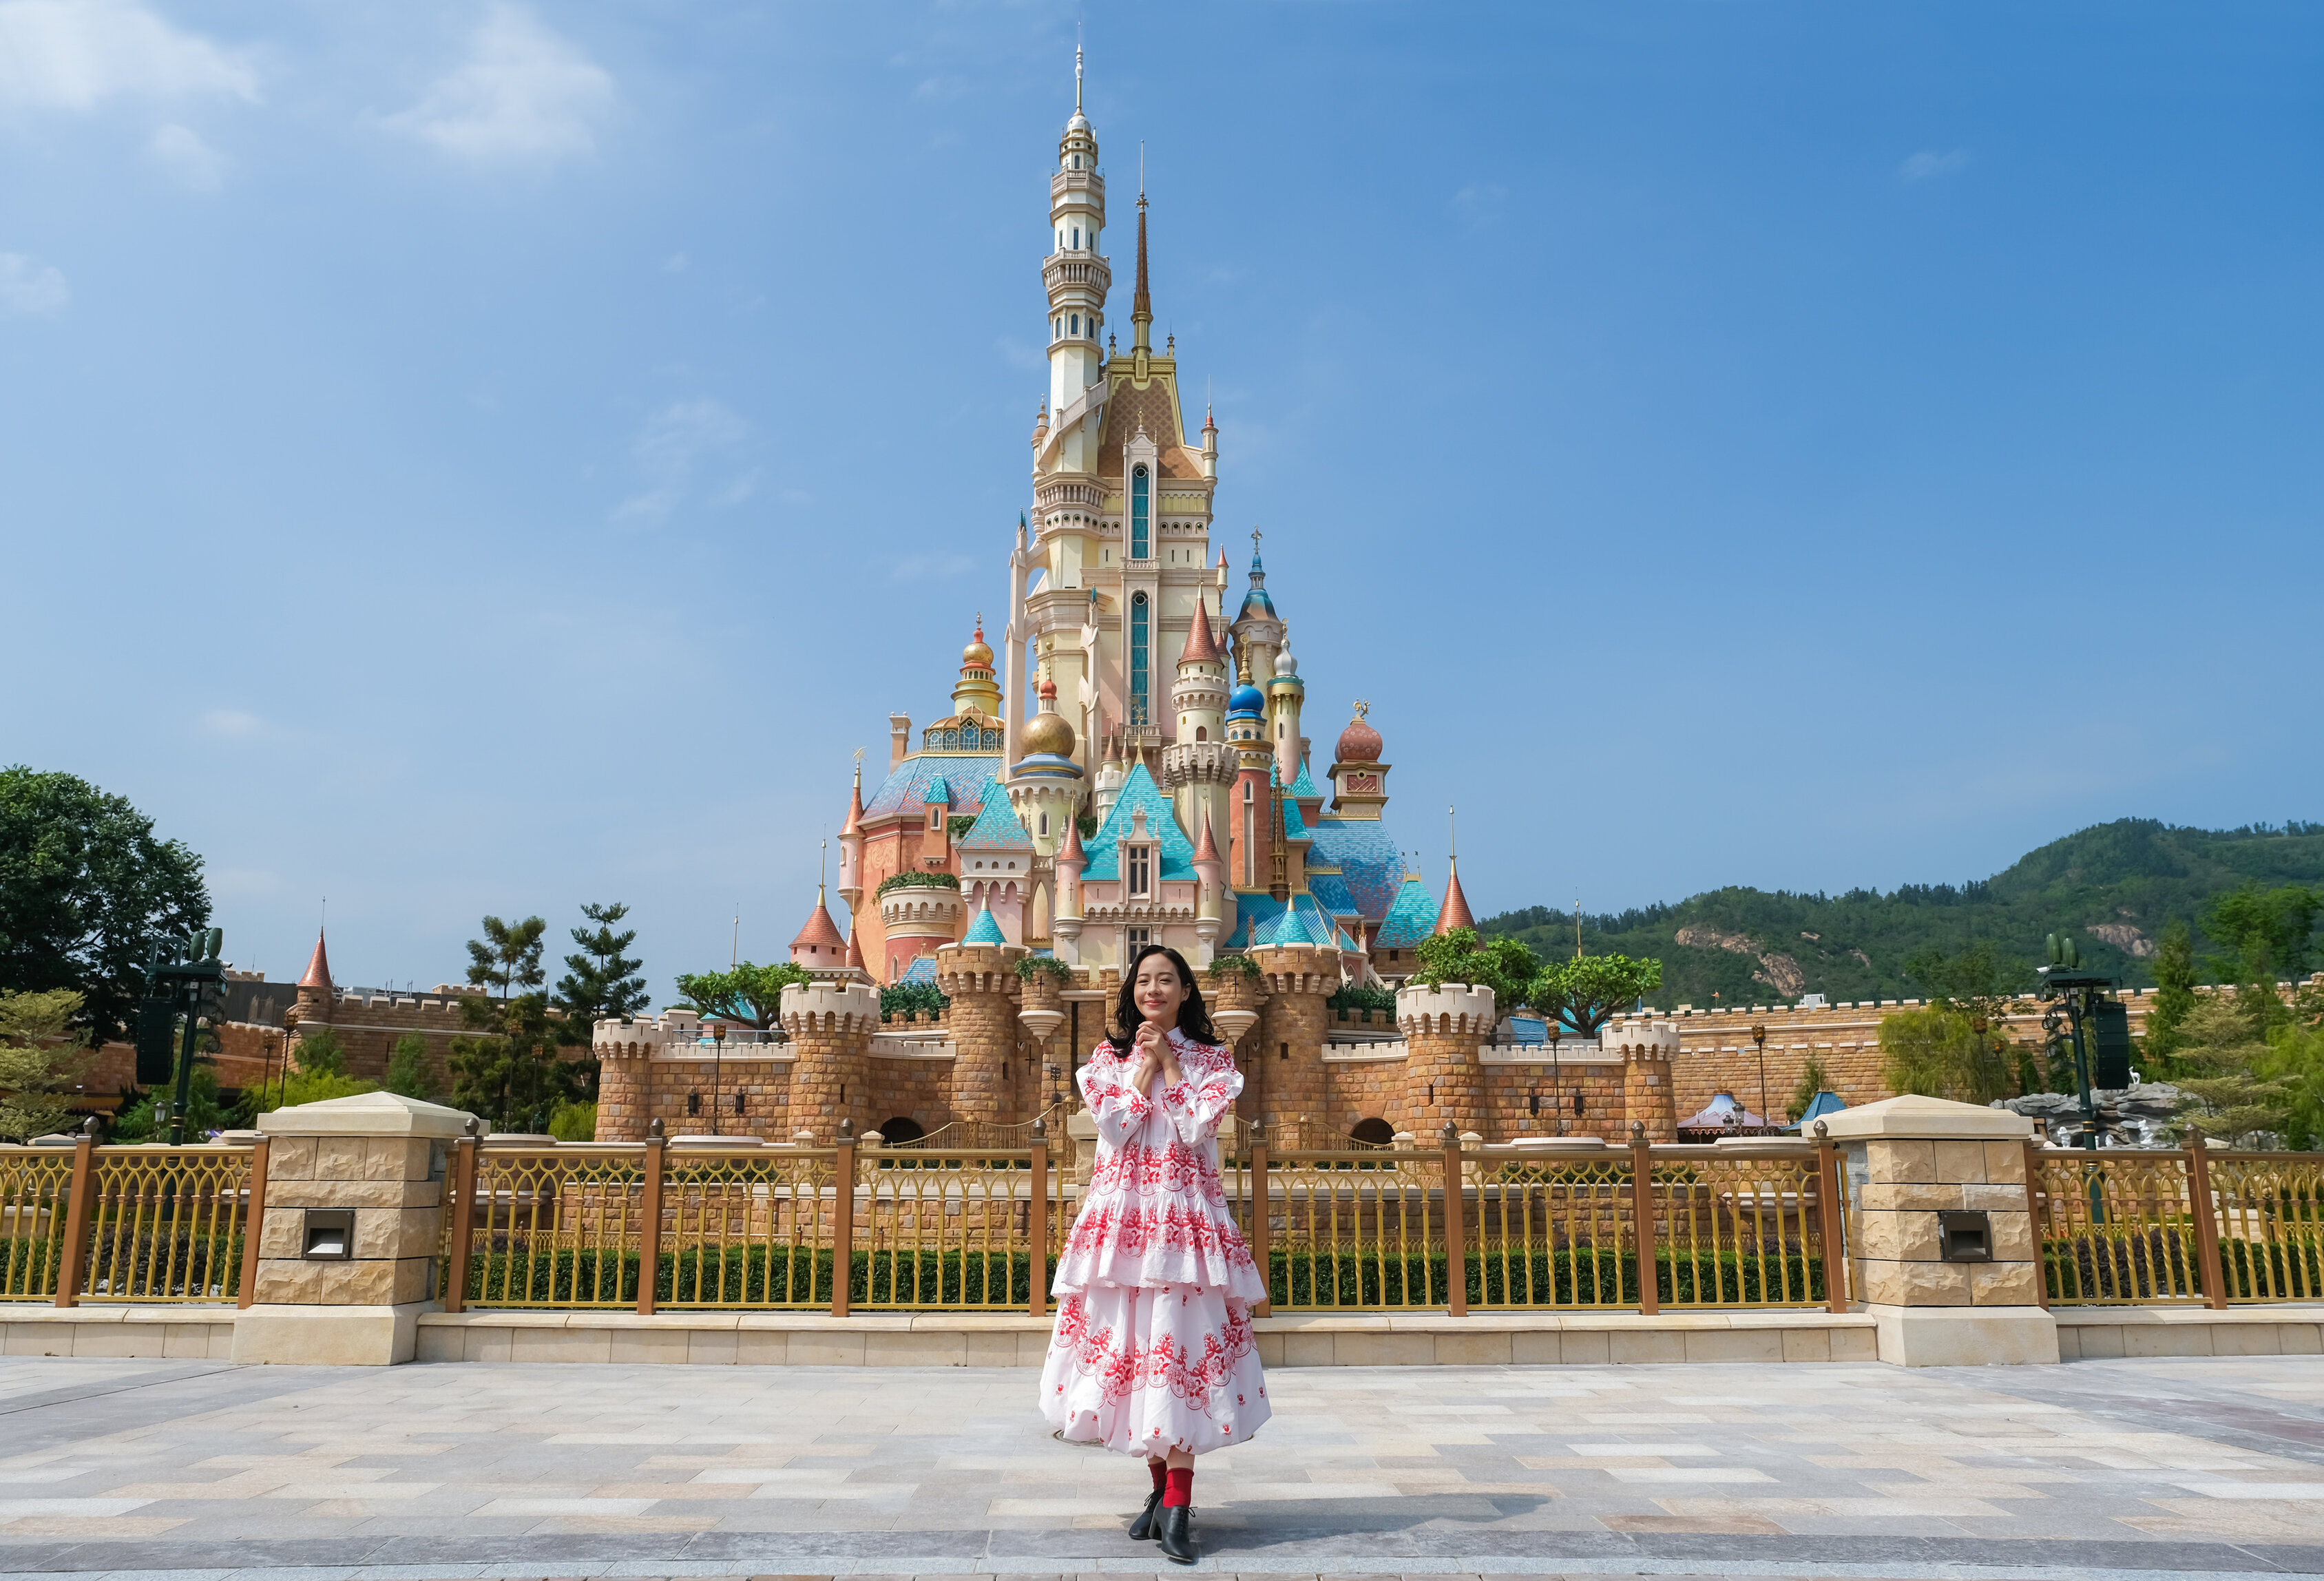 香港迪士尼乐园15周年庆典启动 奇妙梦想城堡正式开园